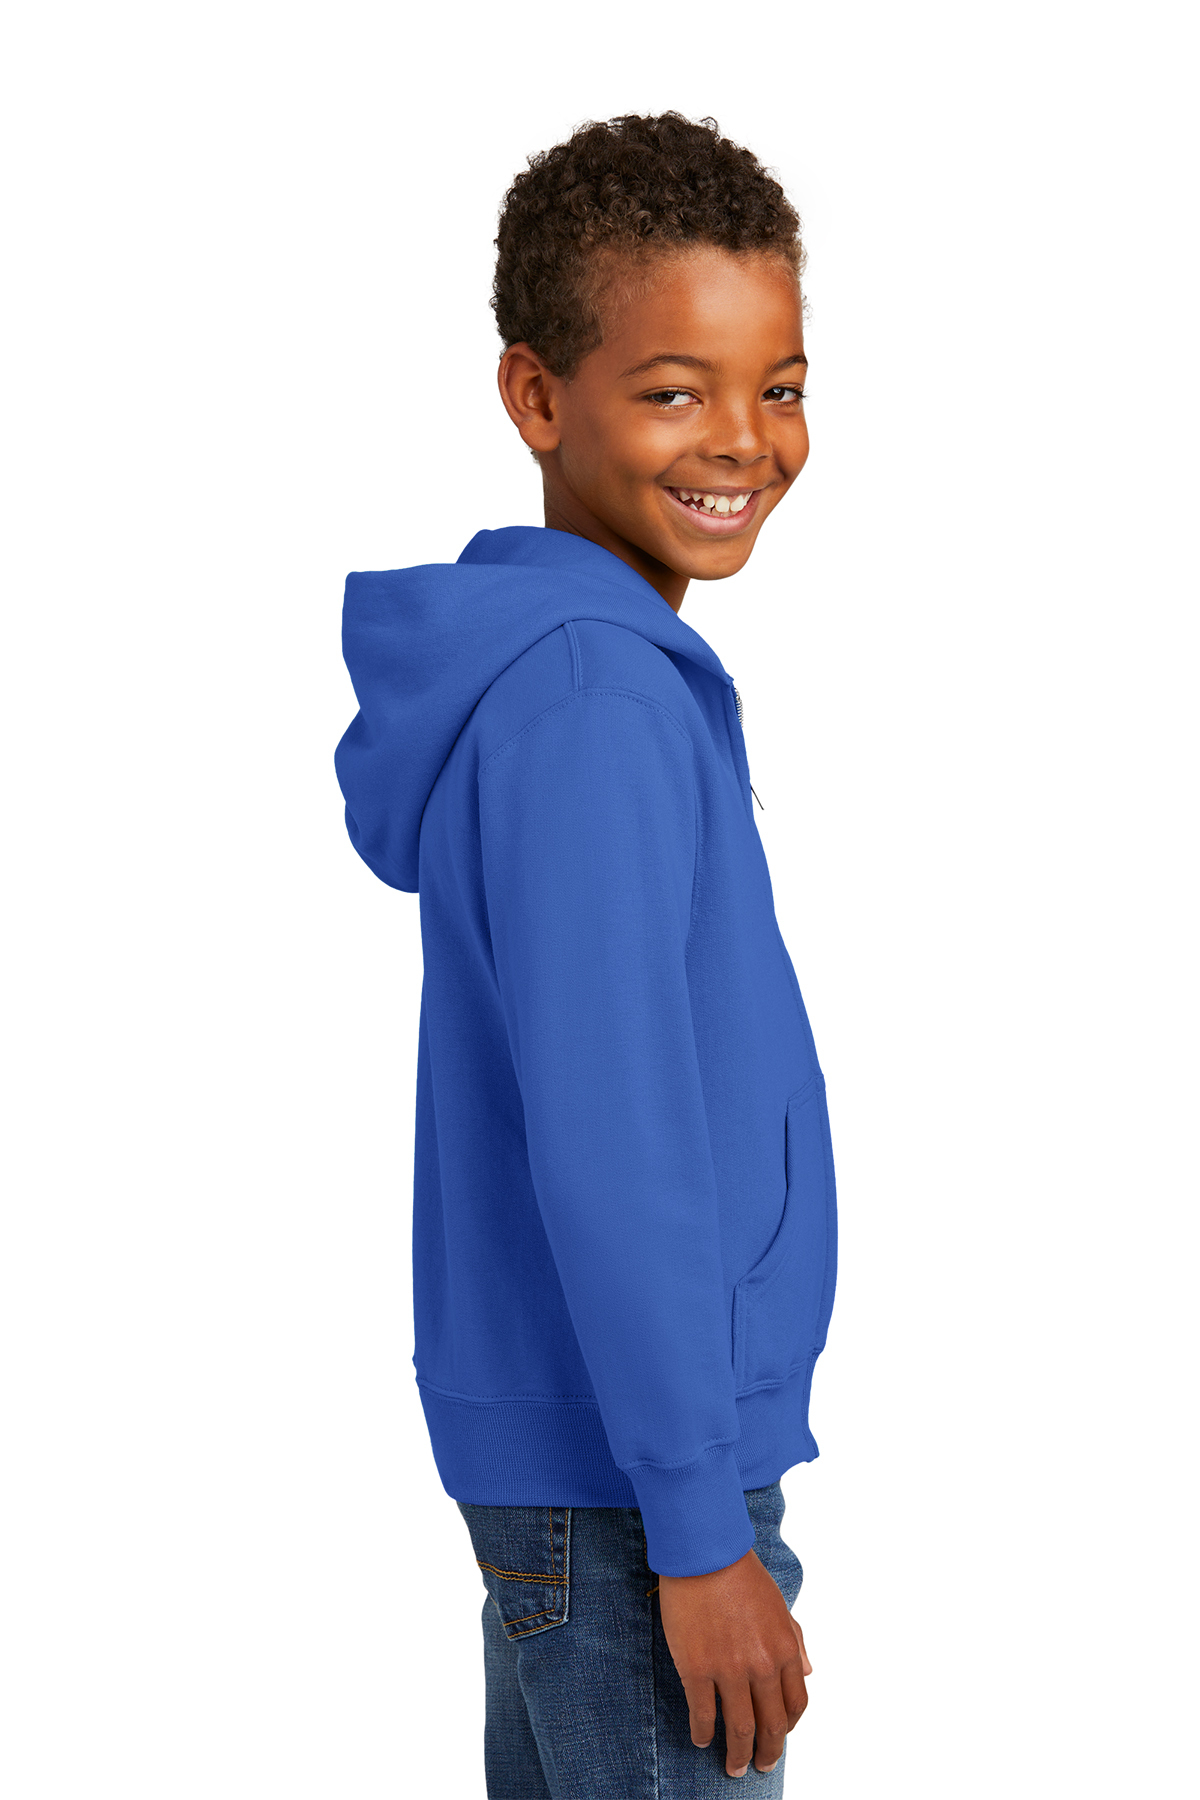 Port & Company Youth Core Fleece Full-Zip Hooded Sweatshirt | Product ...